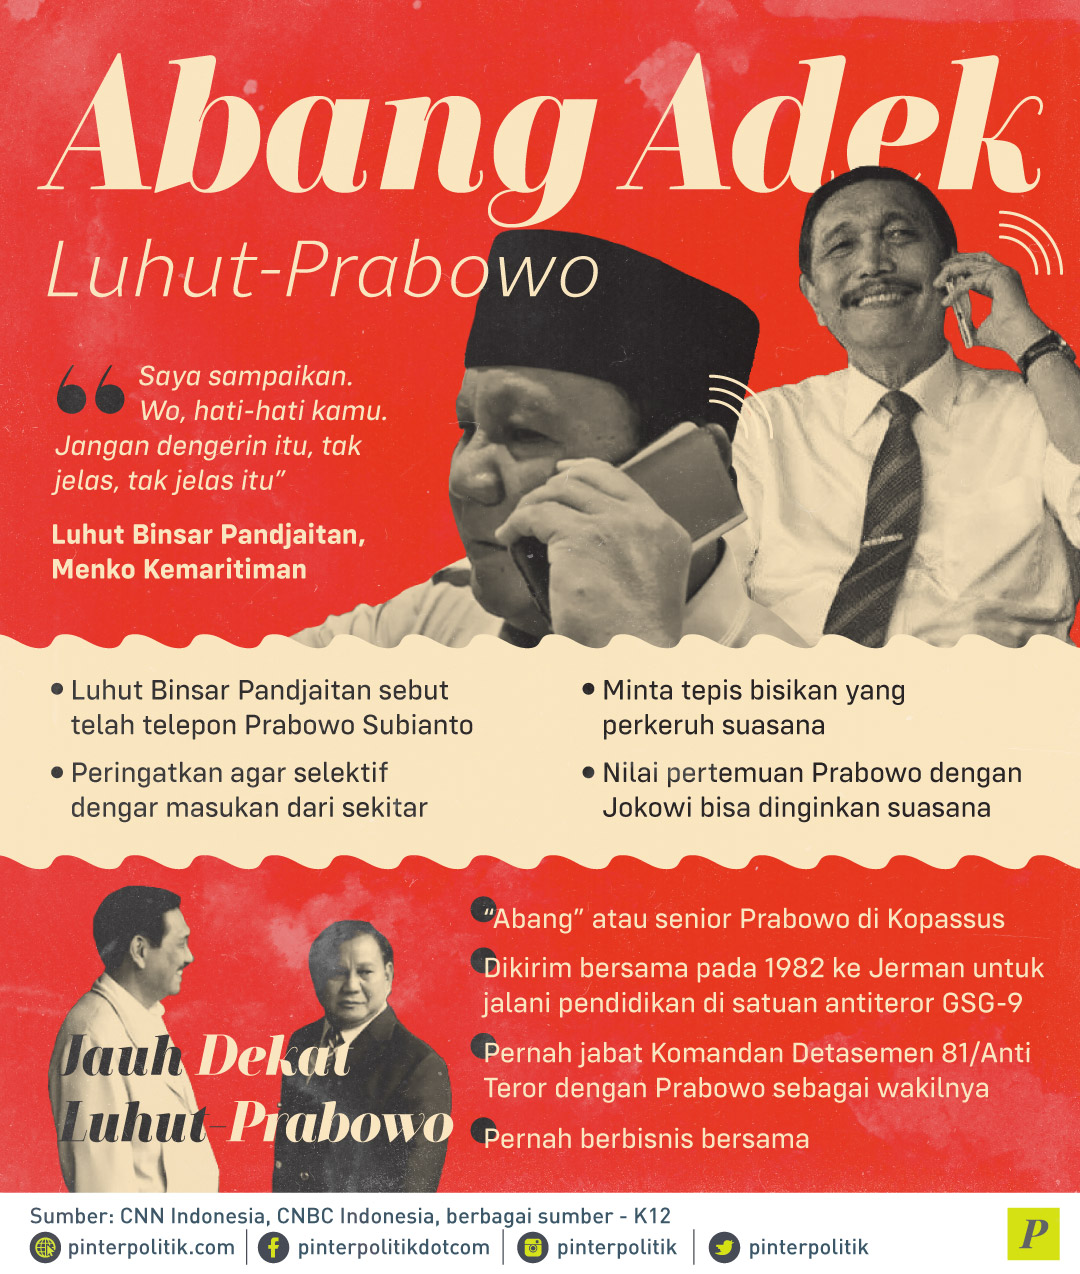 Luhut sebut telah telepon Prabowo peringatkan agar selektif